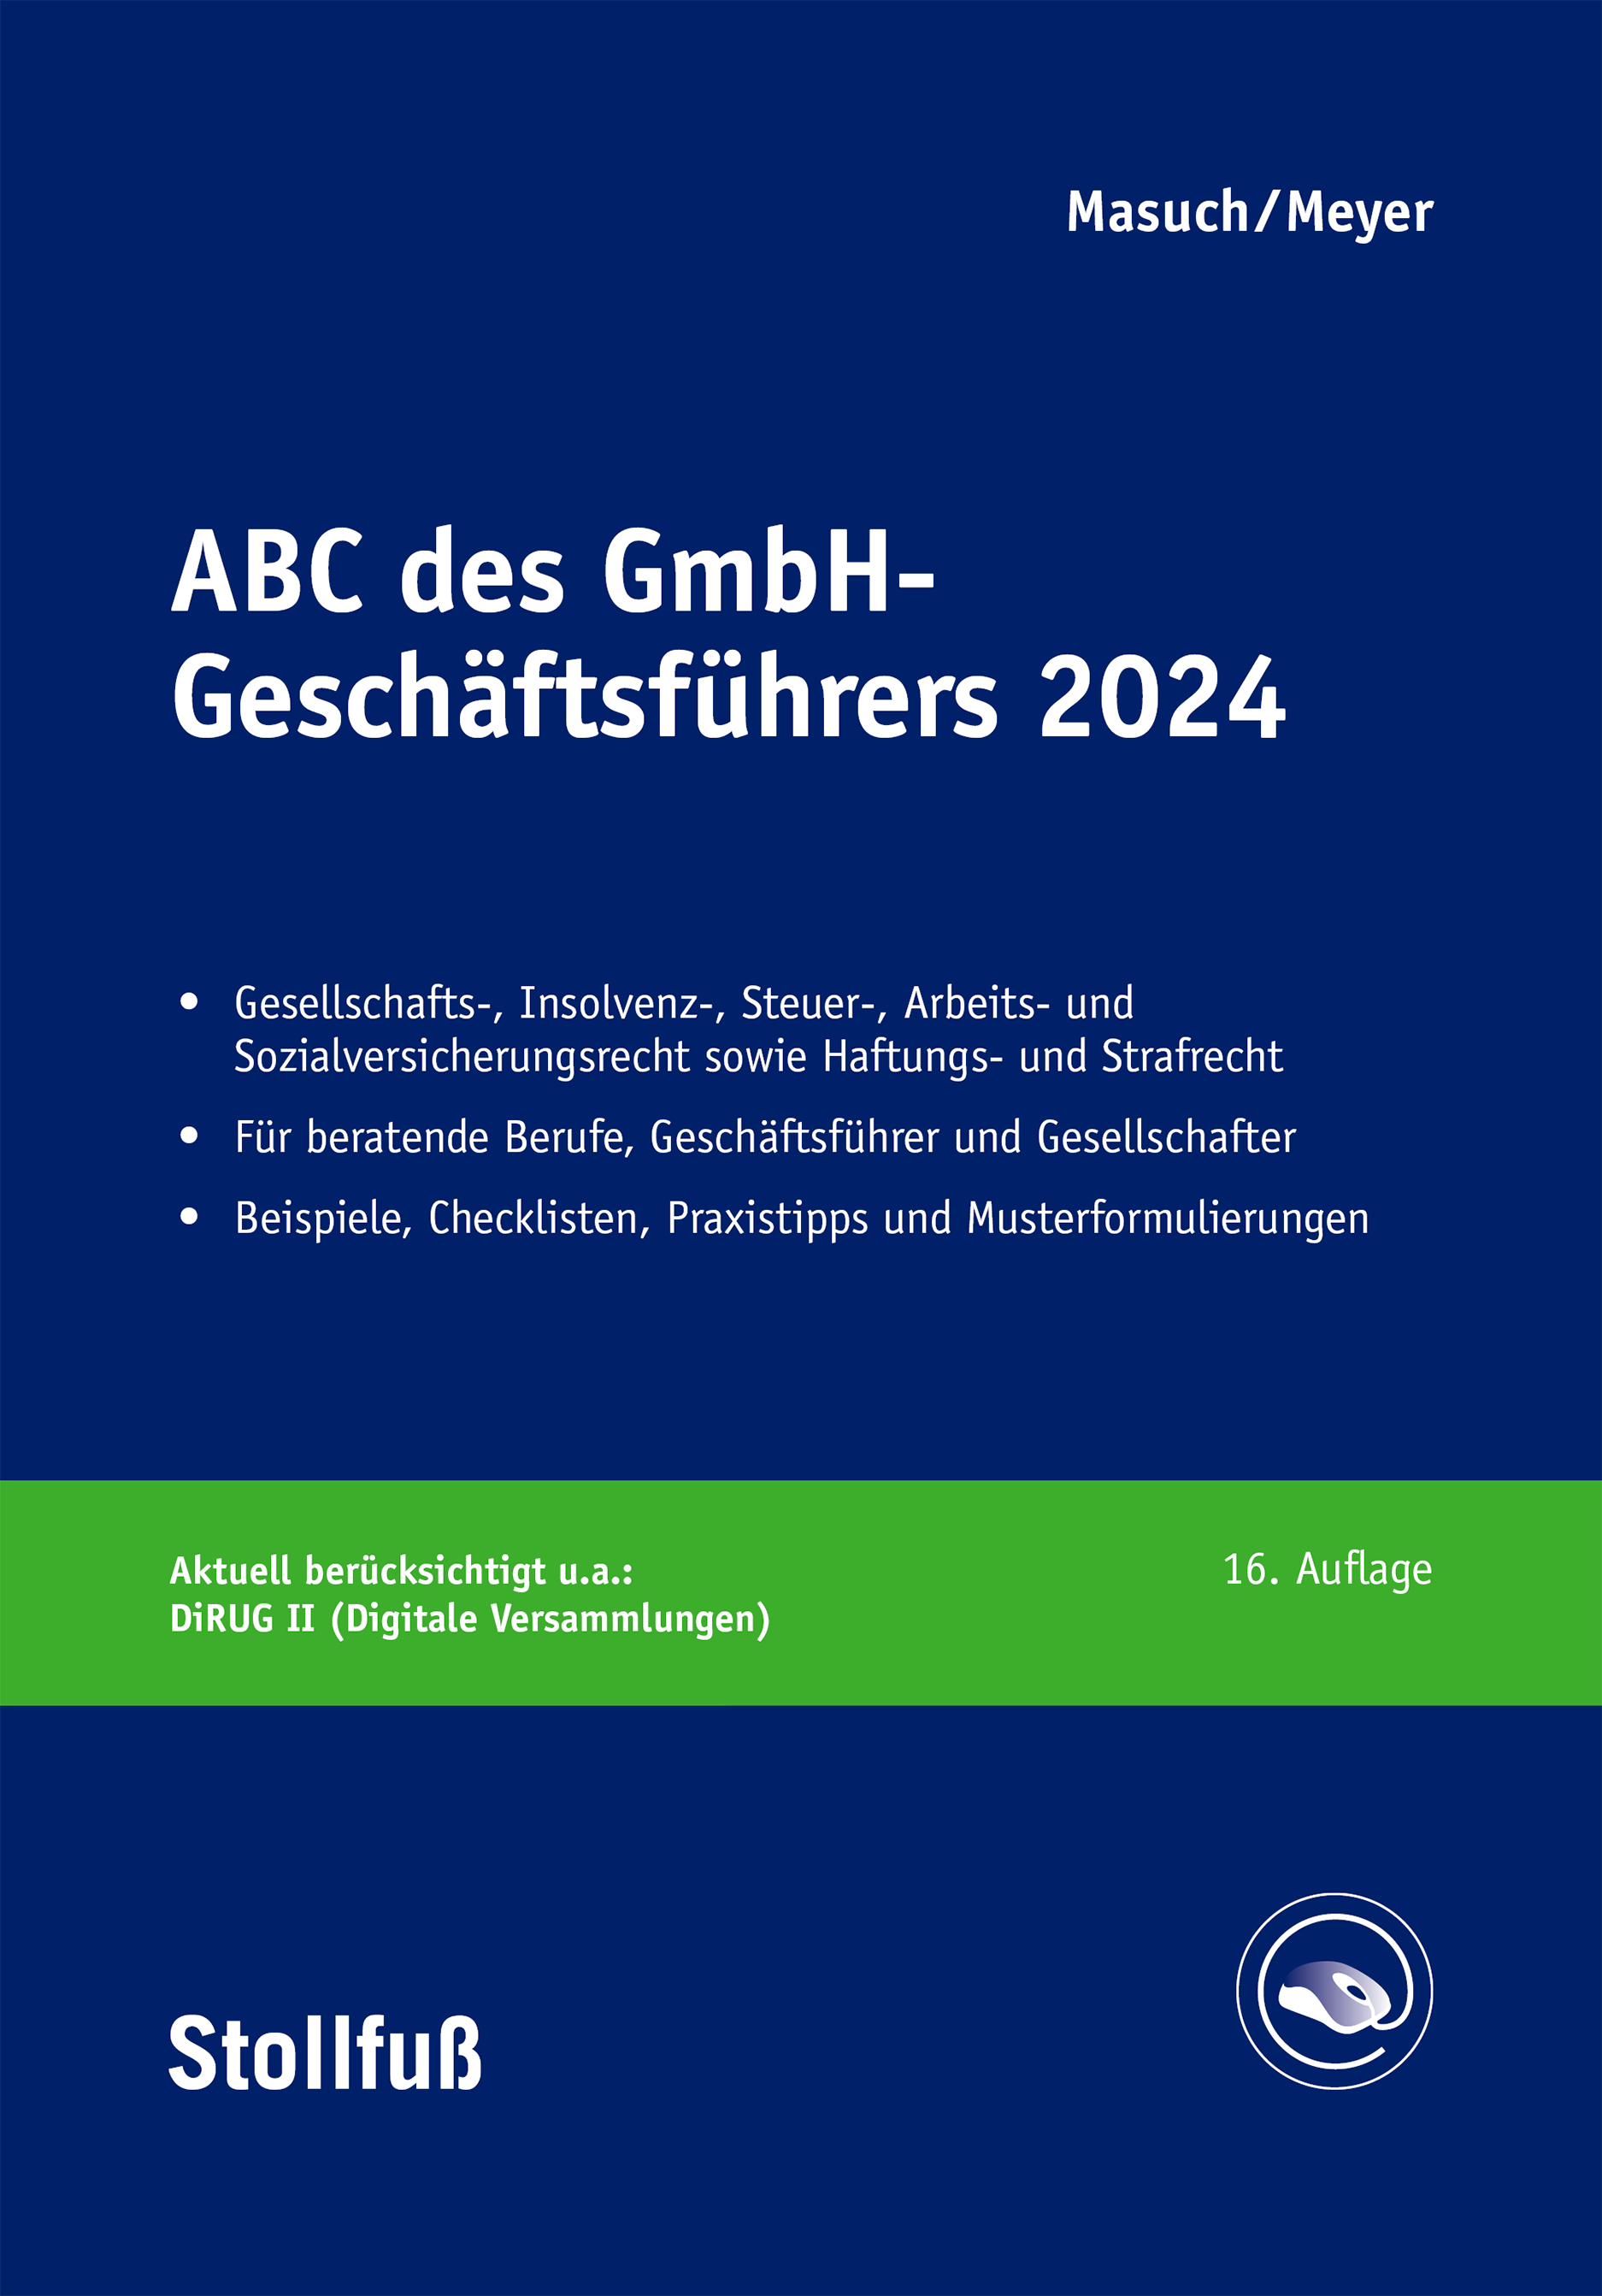 Abbildung: ABC des GmbH-Geschäftsführers